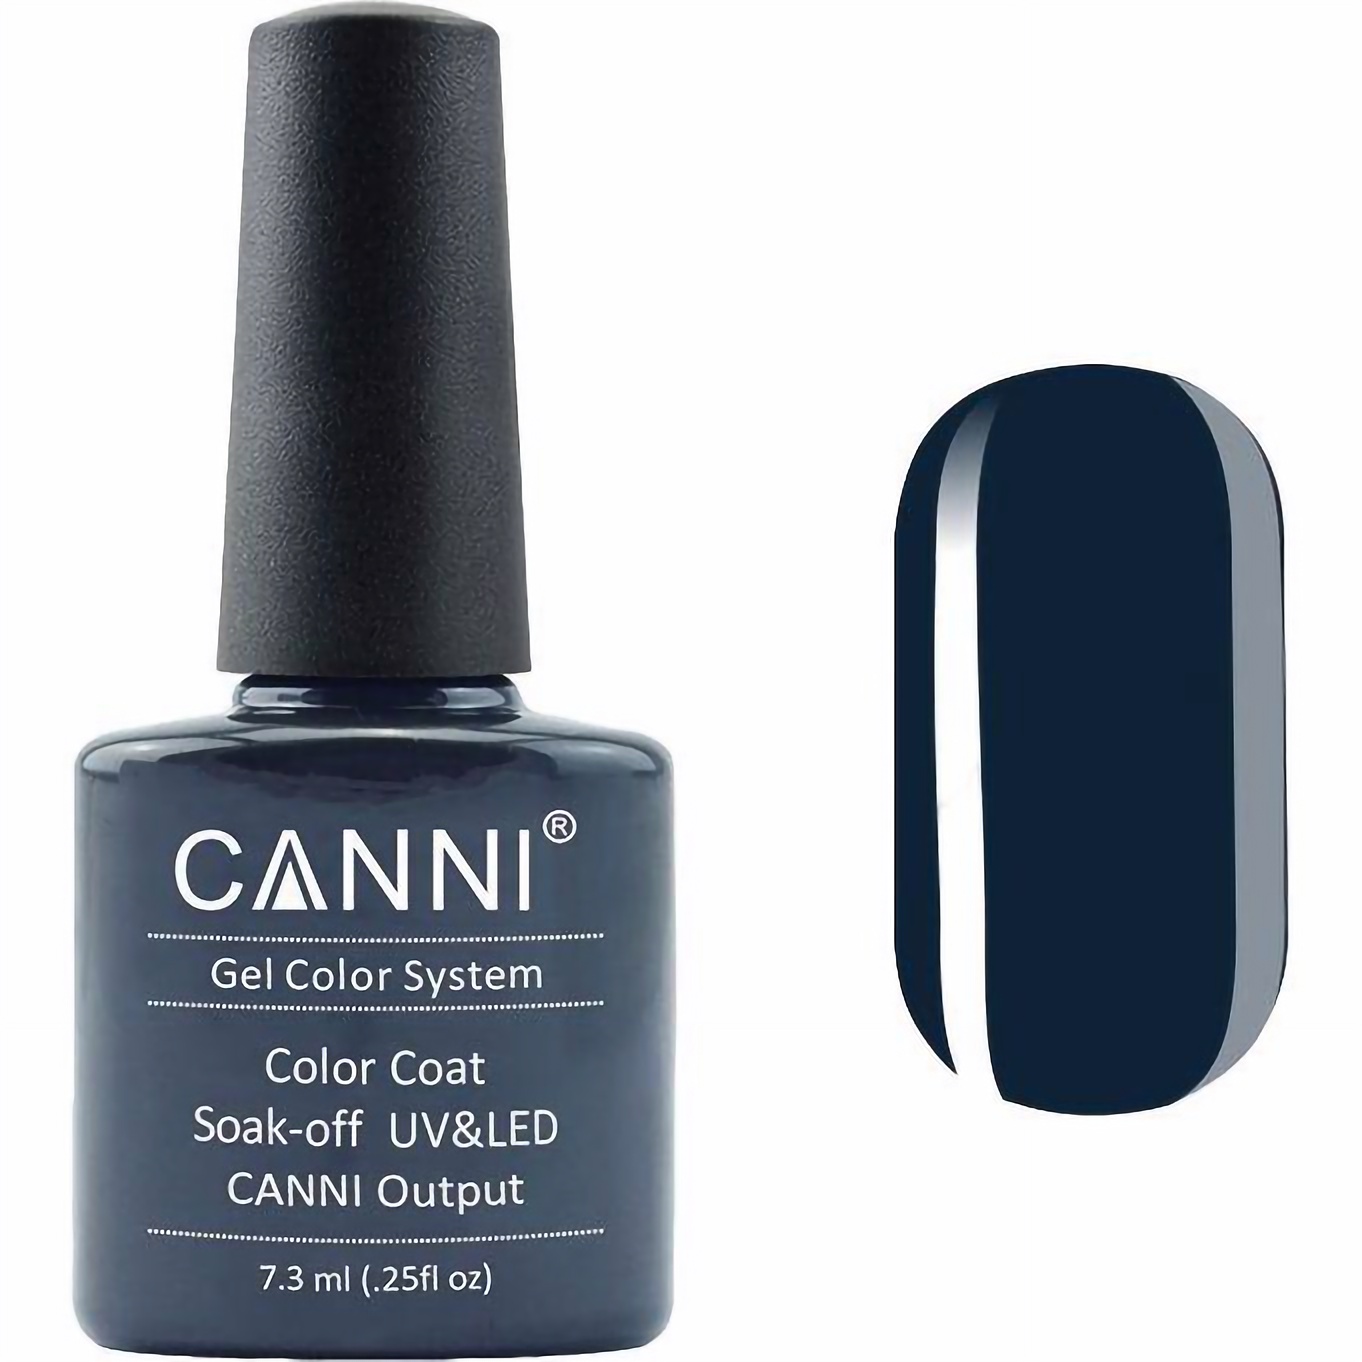 Гель-лак Canni Color Coat Soak-off UV&LED 180 темно-бірюзовий 7.3 мл - фото 1